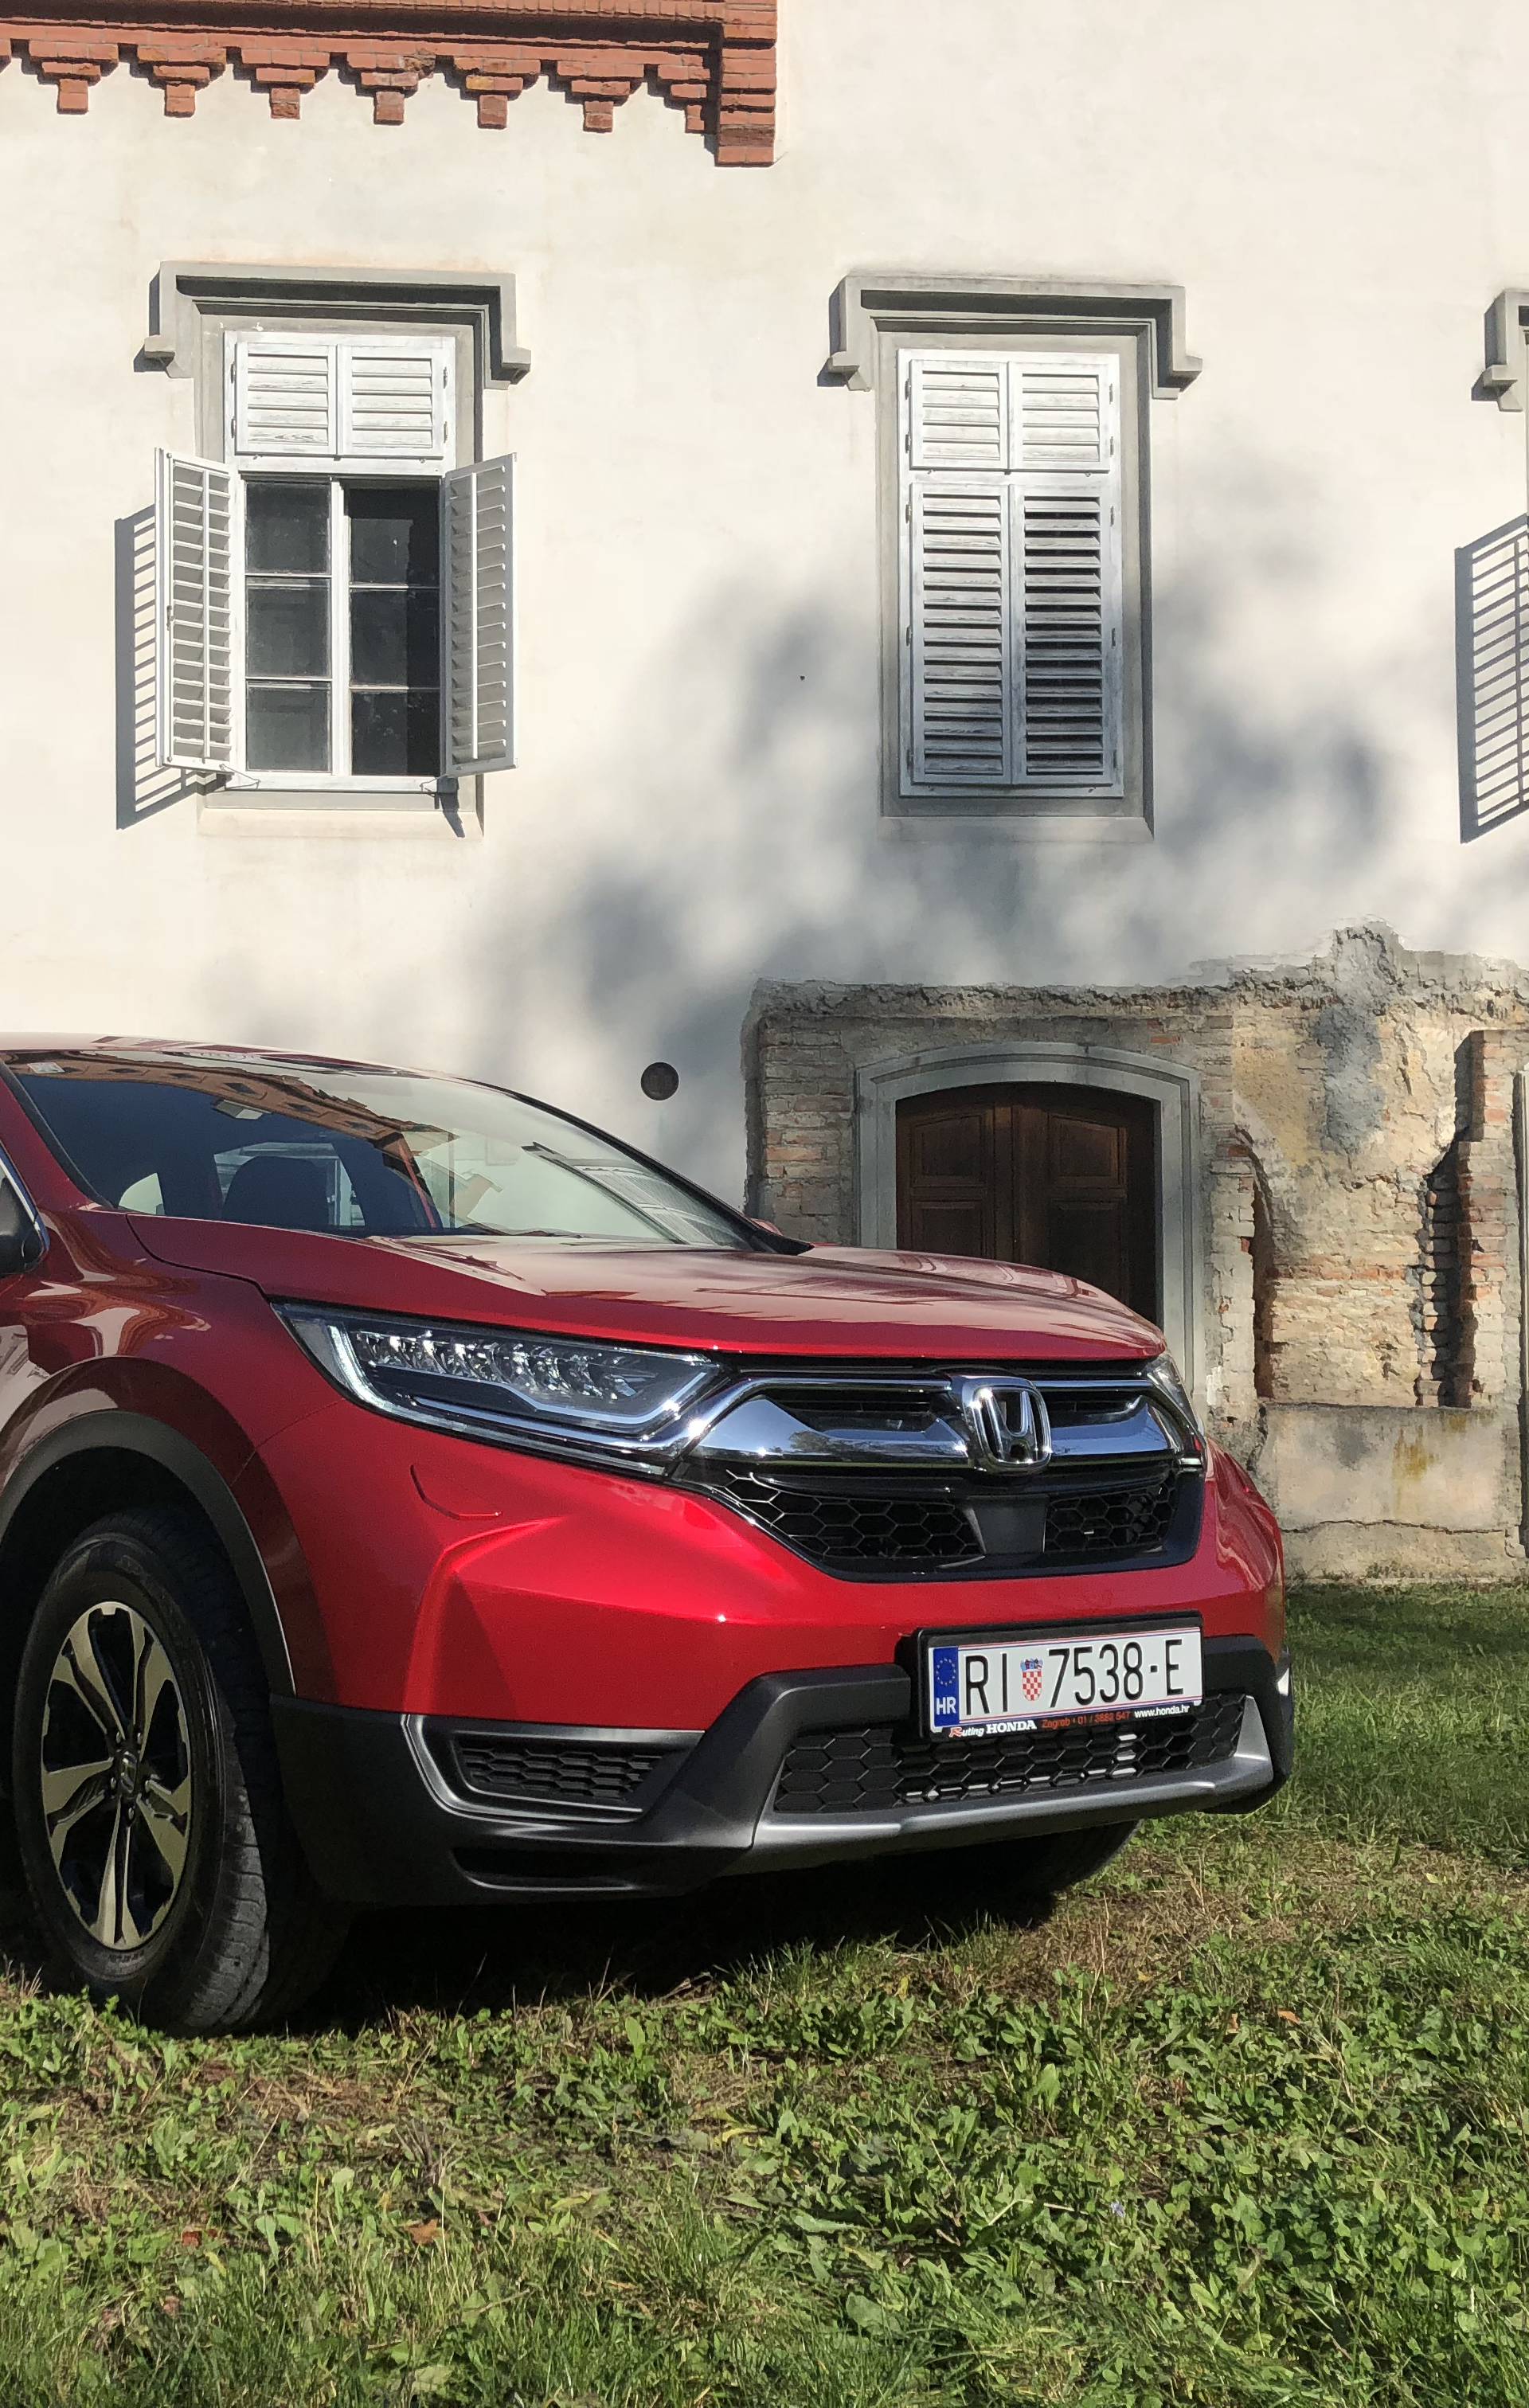 Prostraniji i napredniji: Hondin SUV CR-V stigao u Hrvatsku